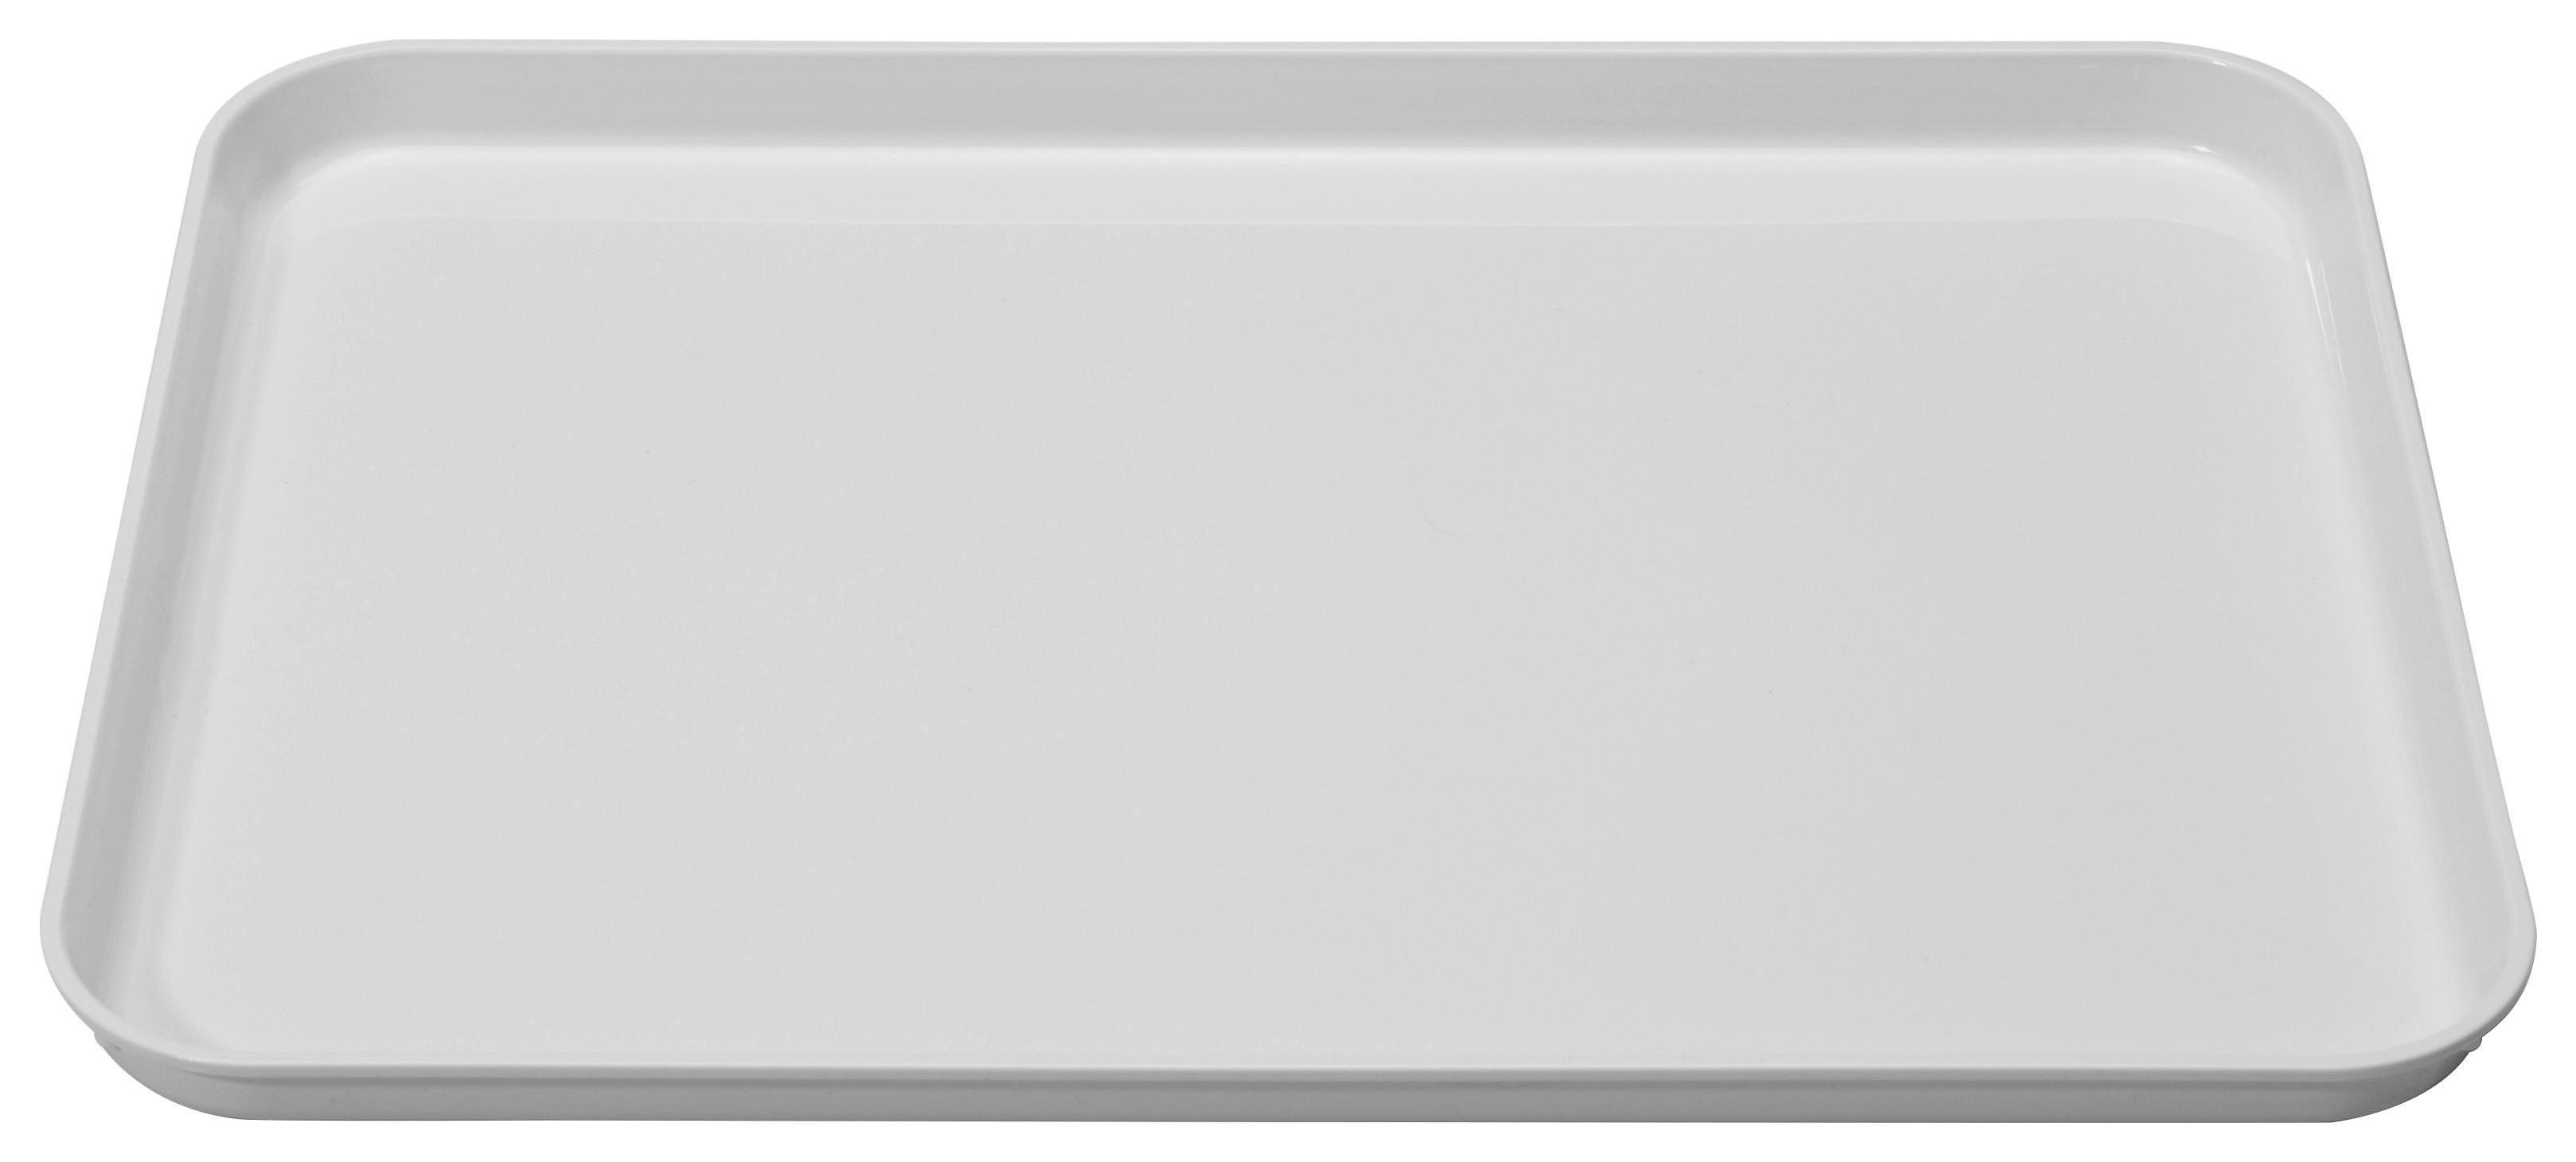 Tablett aus Kunststoff Britta 41x30 cm, Weiß - Weiß, KONVENTIONELL, Kunststoff (41/30/2cm)